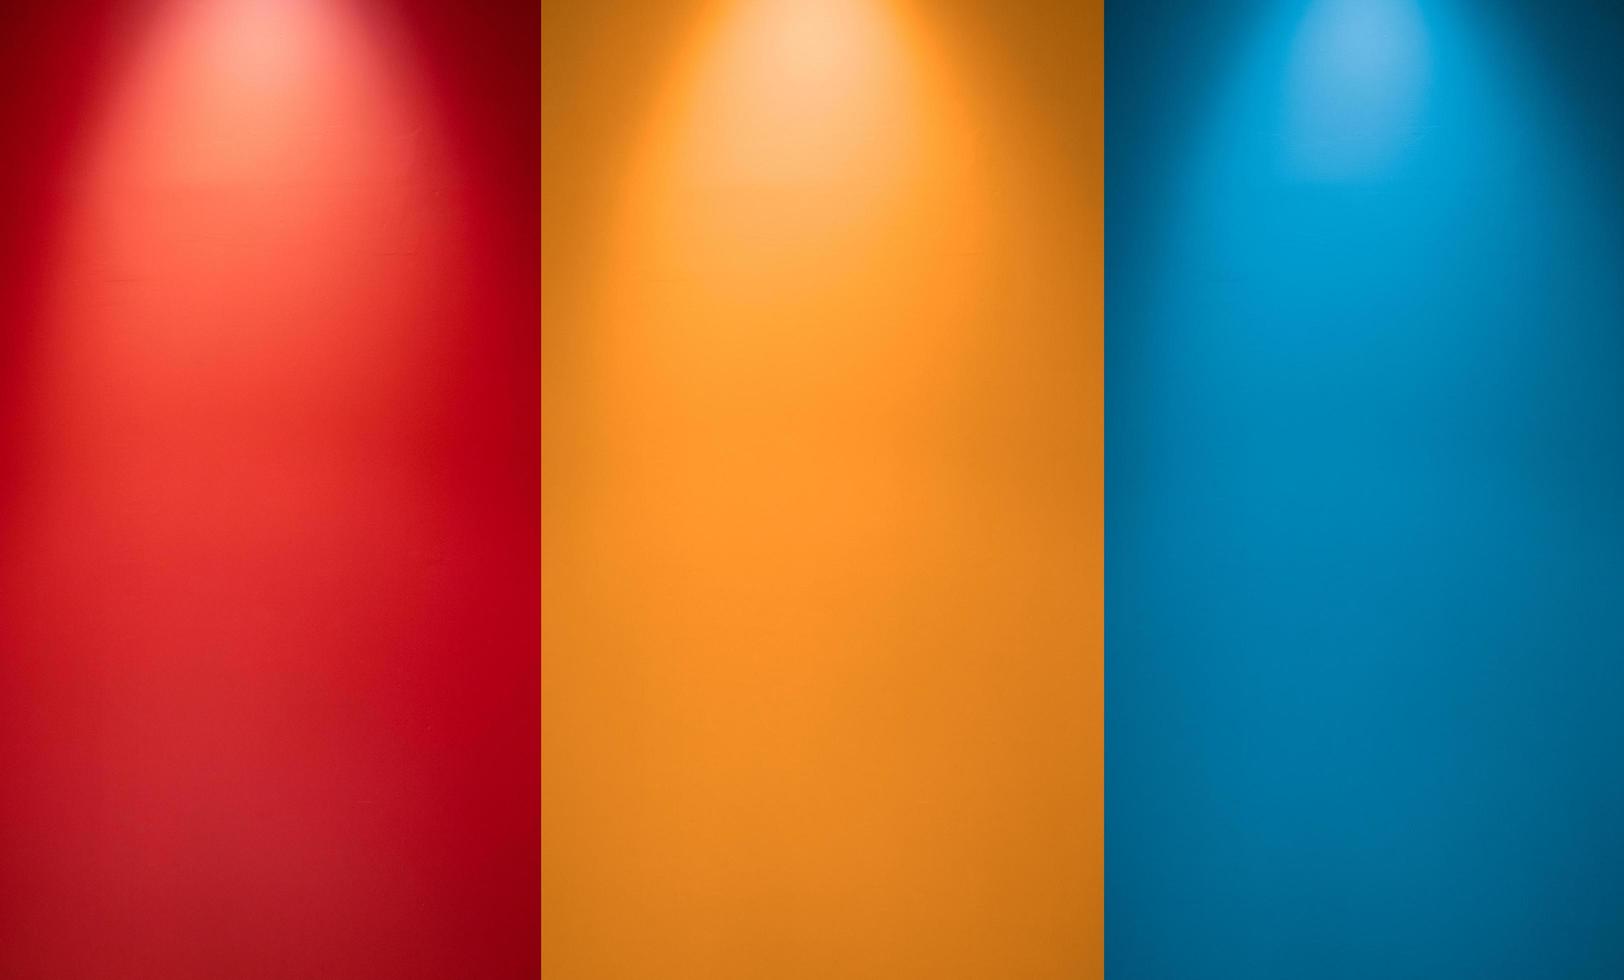 parede vazia vermelha, laranja ou amarela e azul com holofotes. luz da lâmpada iluminada. interior do quarto com luz de lâmpada de teto e parede colorida. fundo de textura de parede de estúdio foto